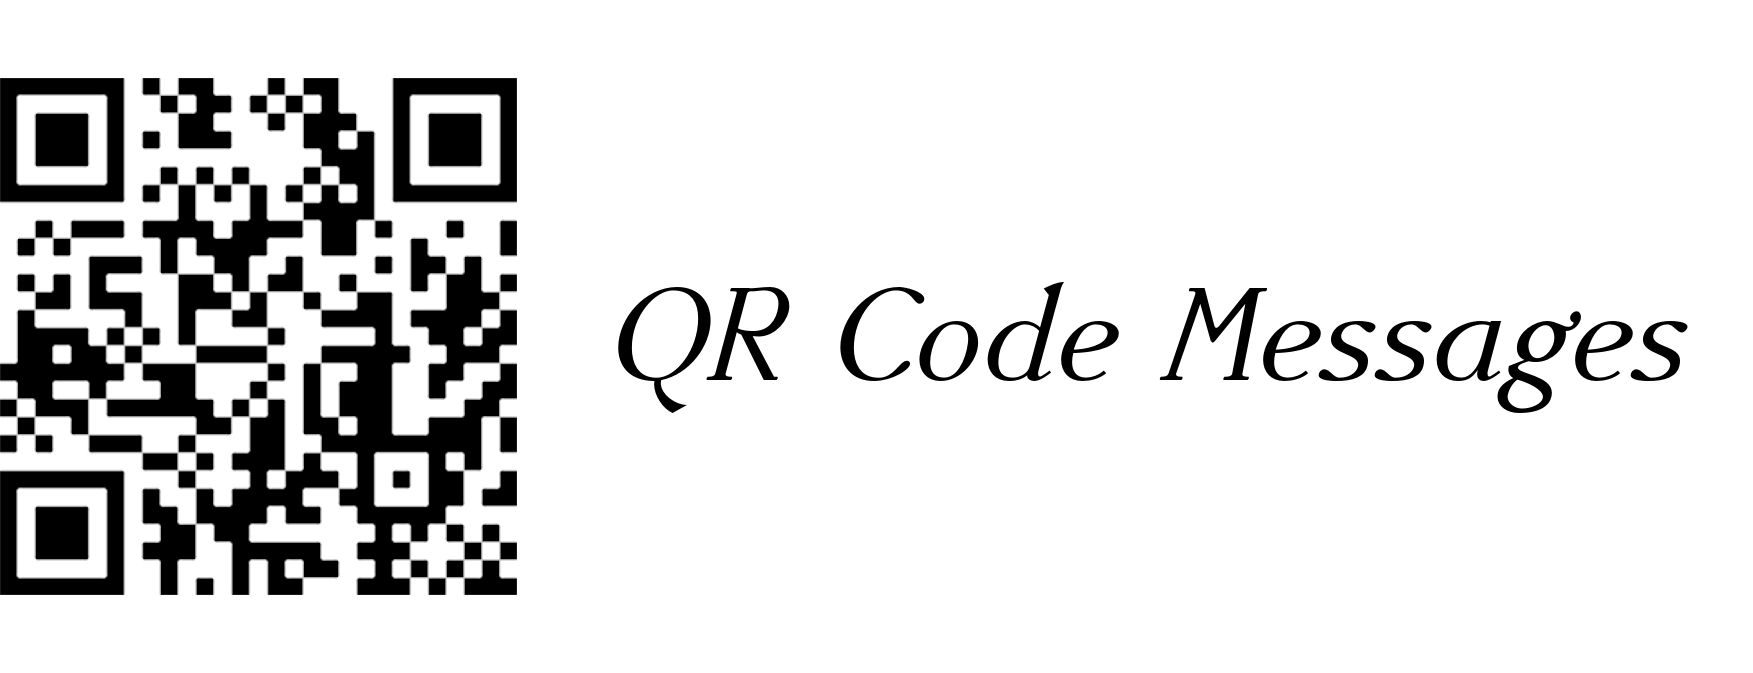 Logo QR CODE Messages